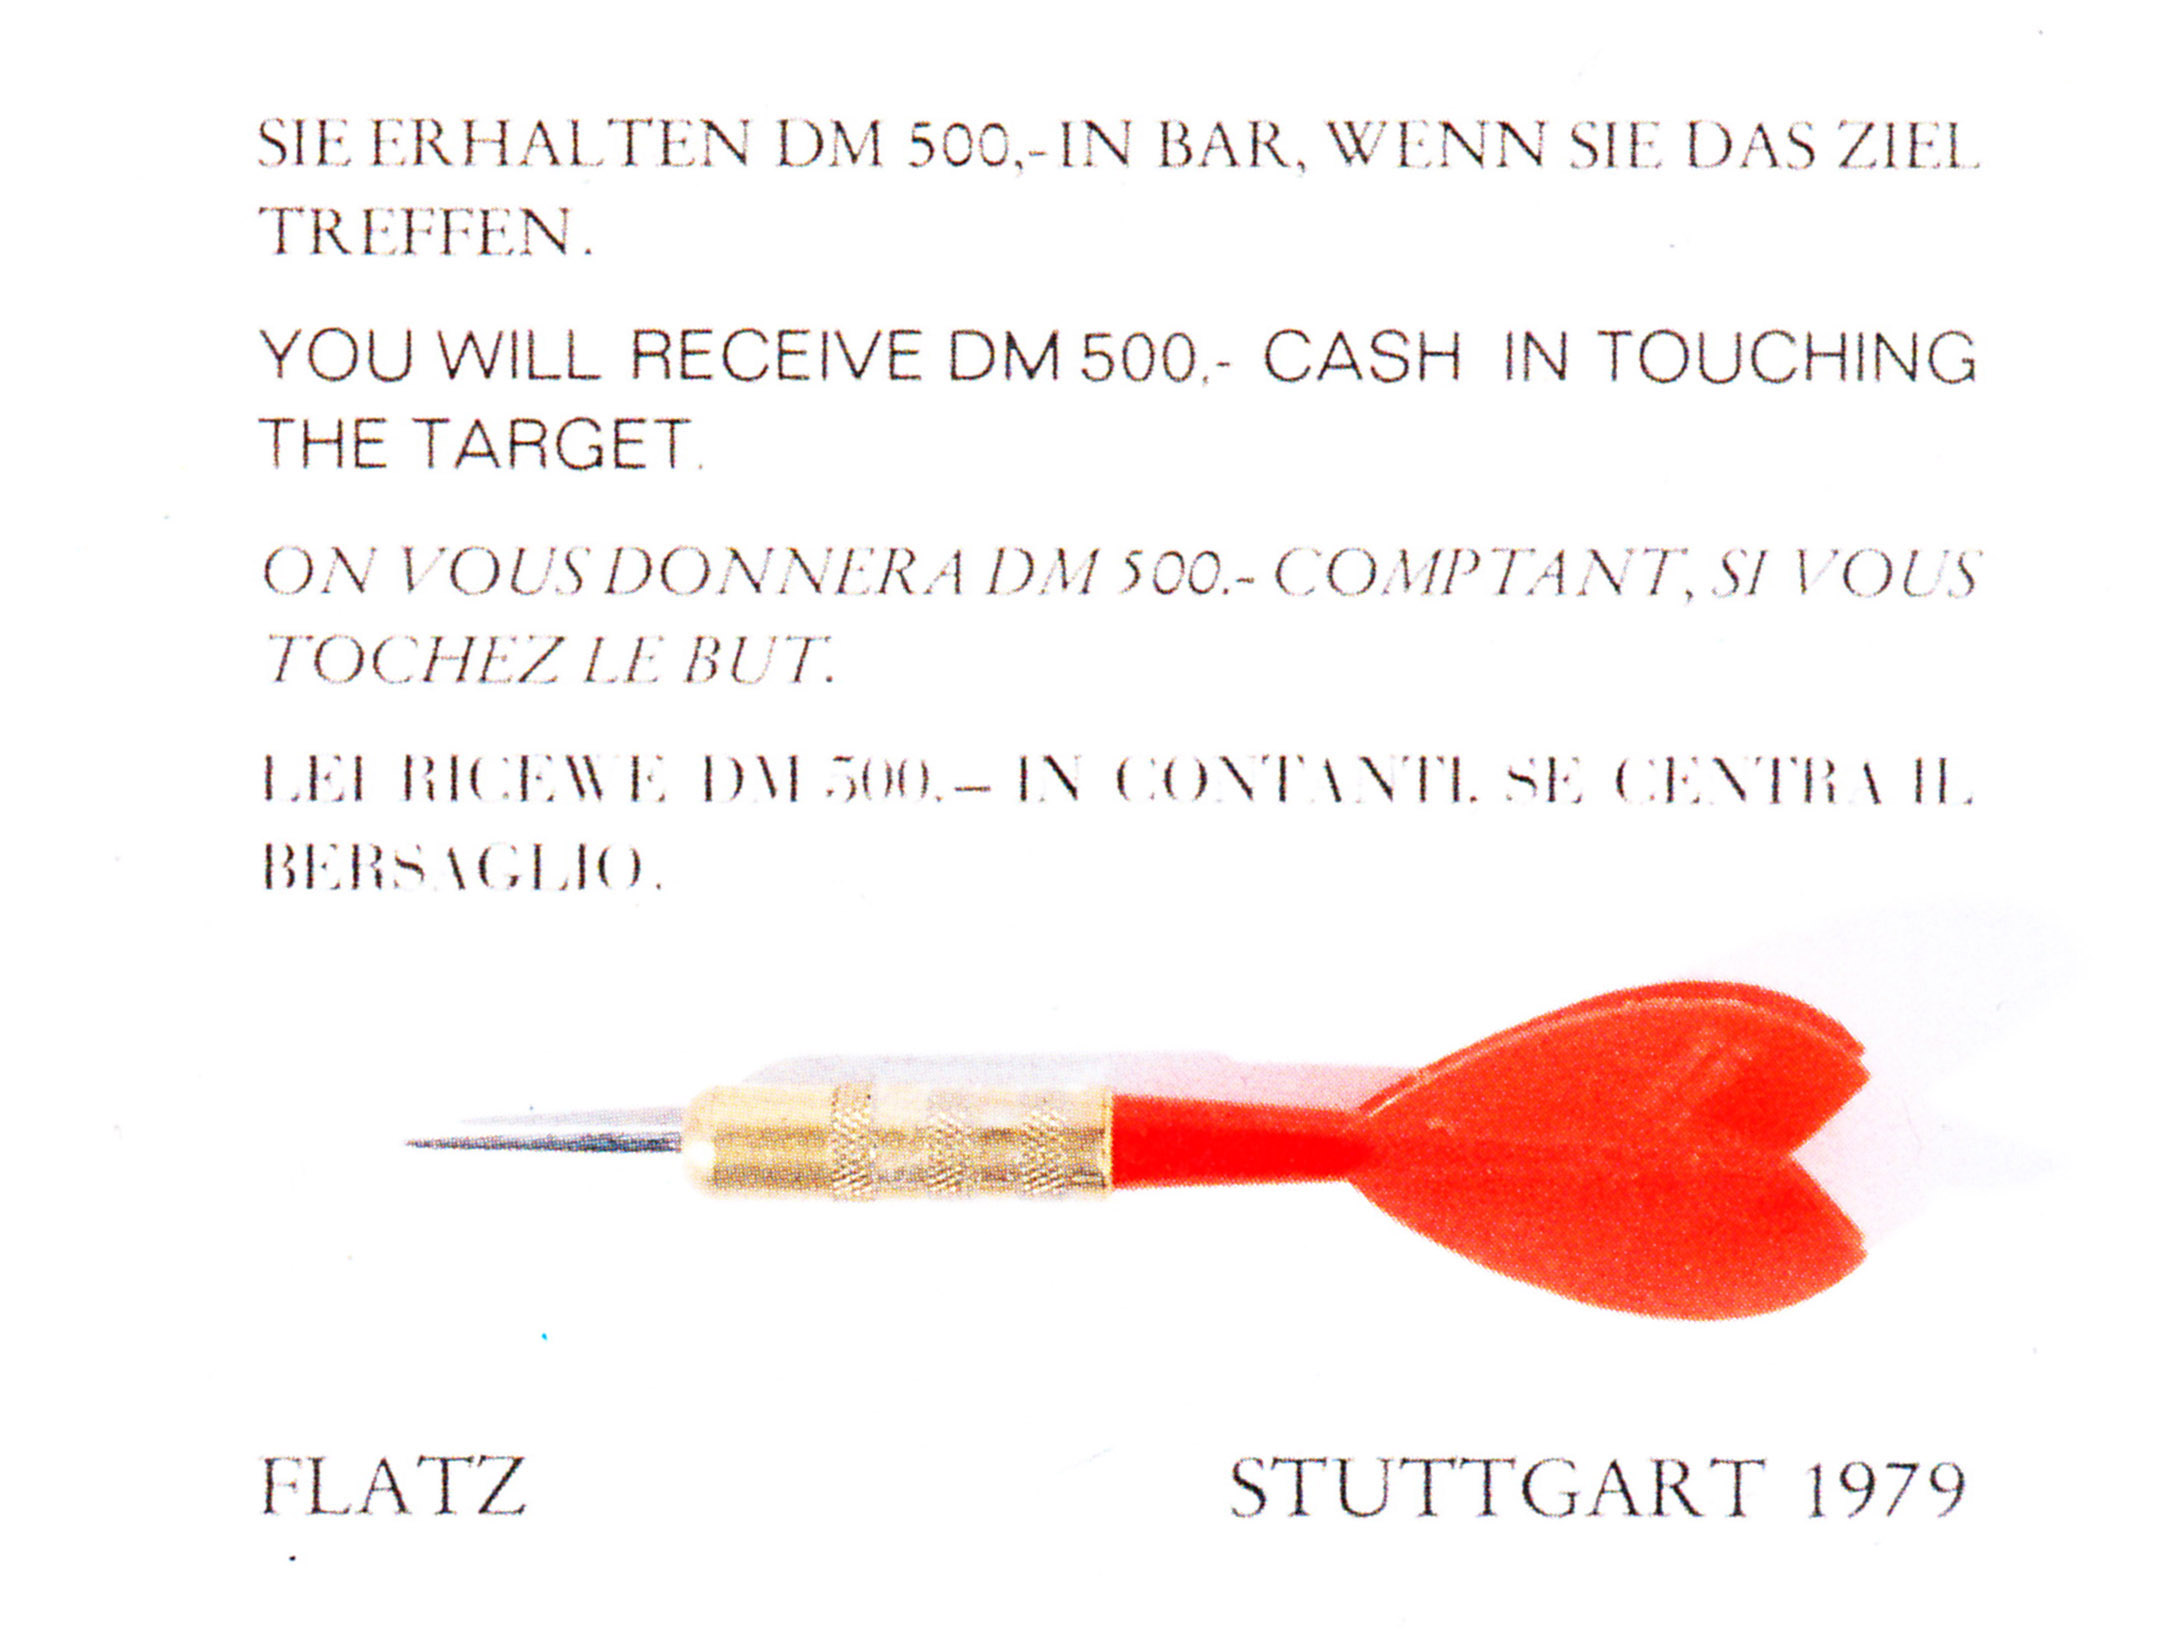 FLATZ: Treffer, 1979, Wurfpfeil